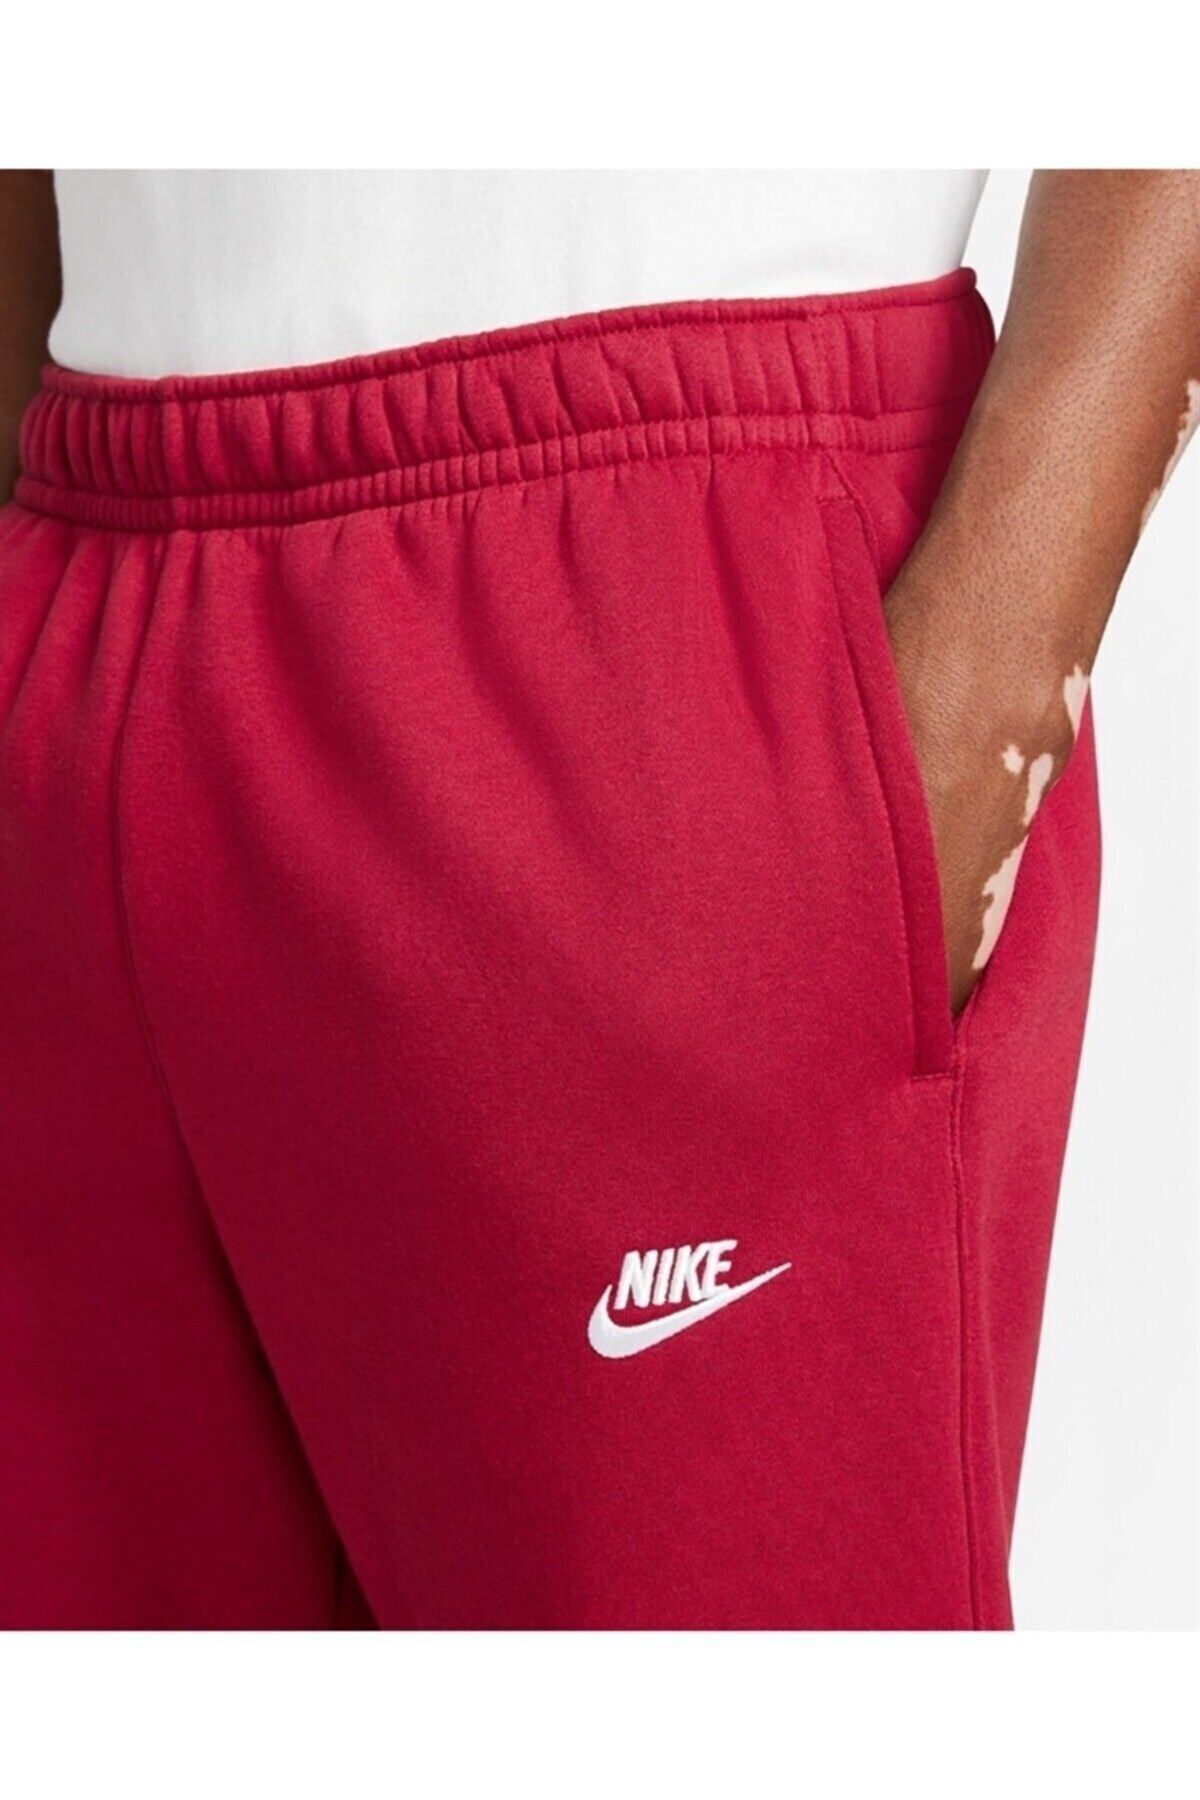 Nike Sportswear Club Fleece Red Color Men's Sweatpants Bv2671-690